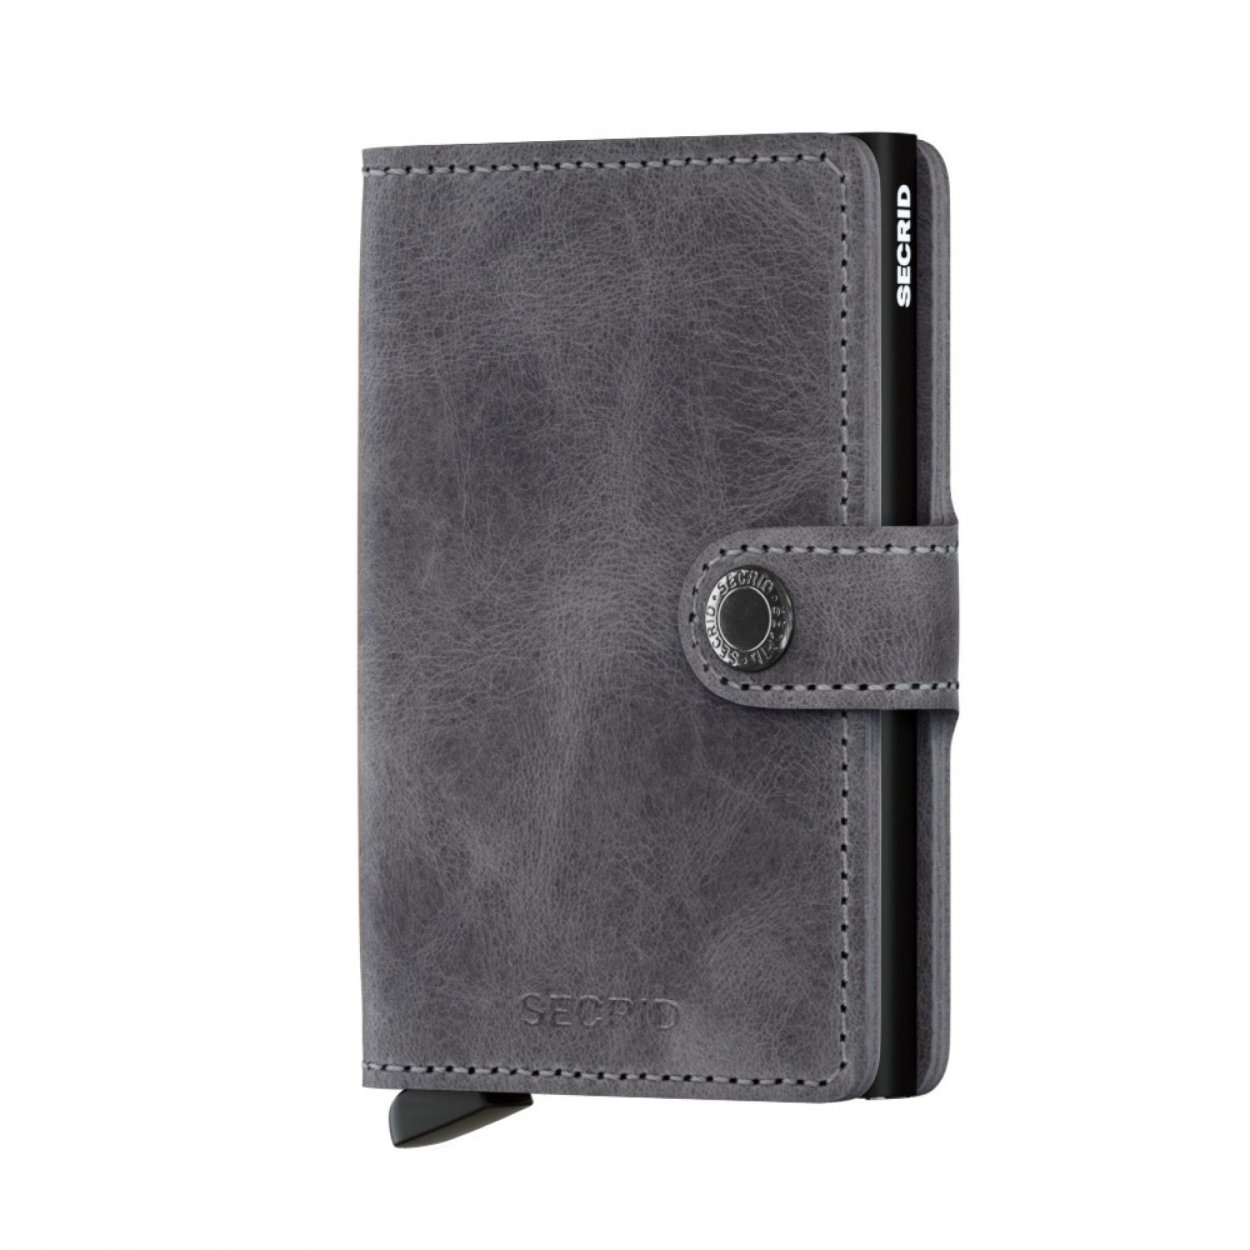 Kožená peněženka Secrid v šedočerné barvě s jemným vzorem